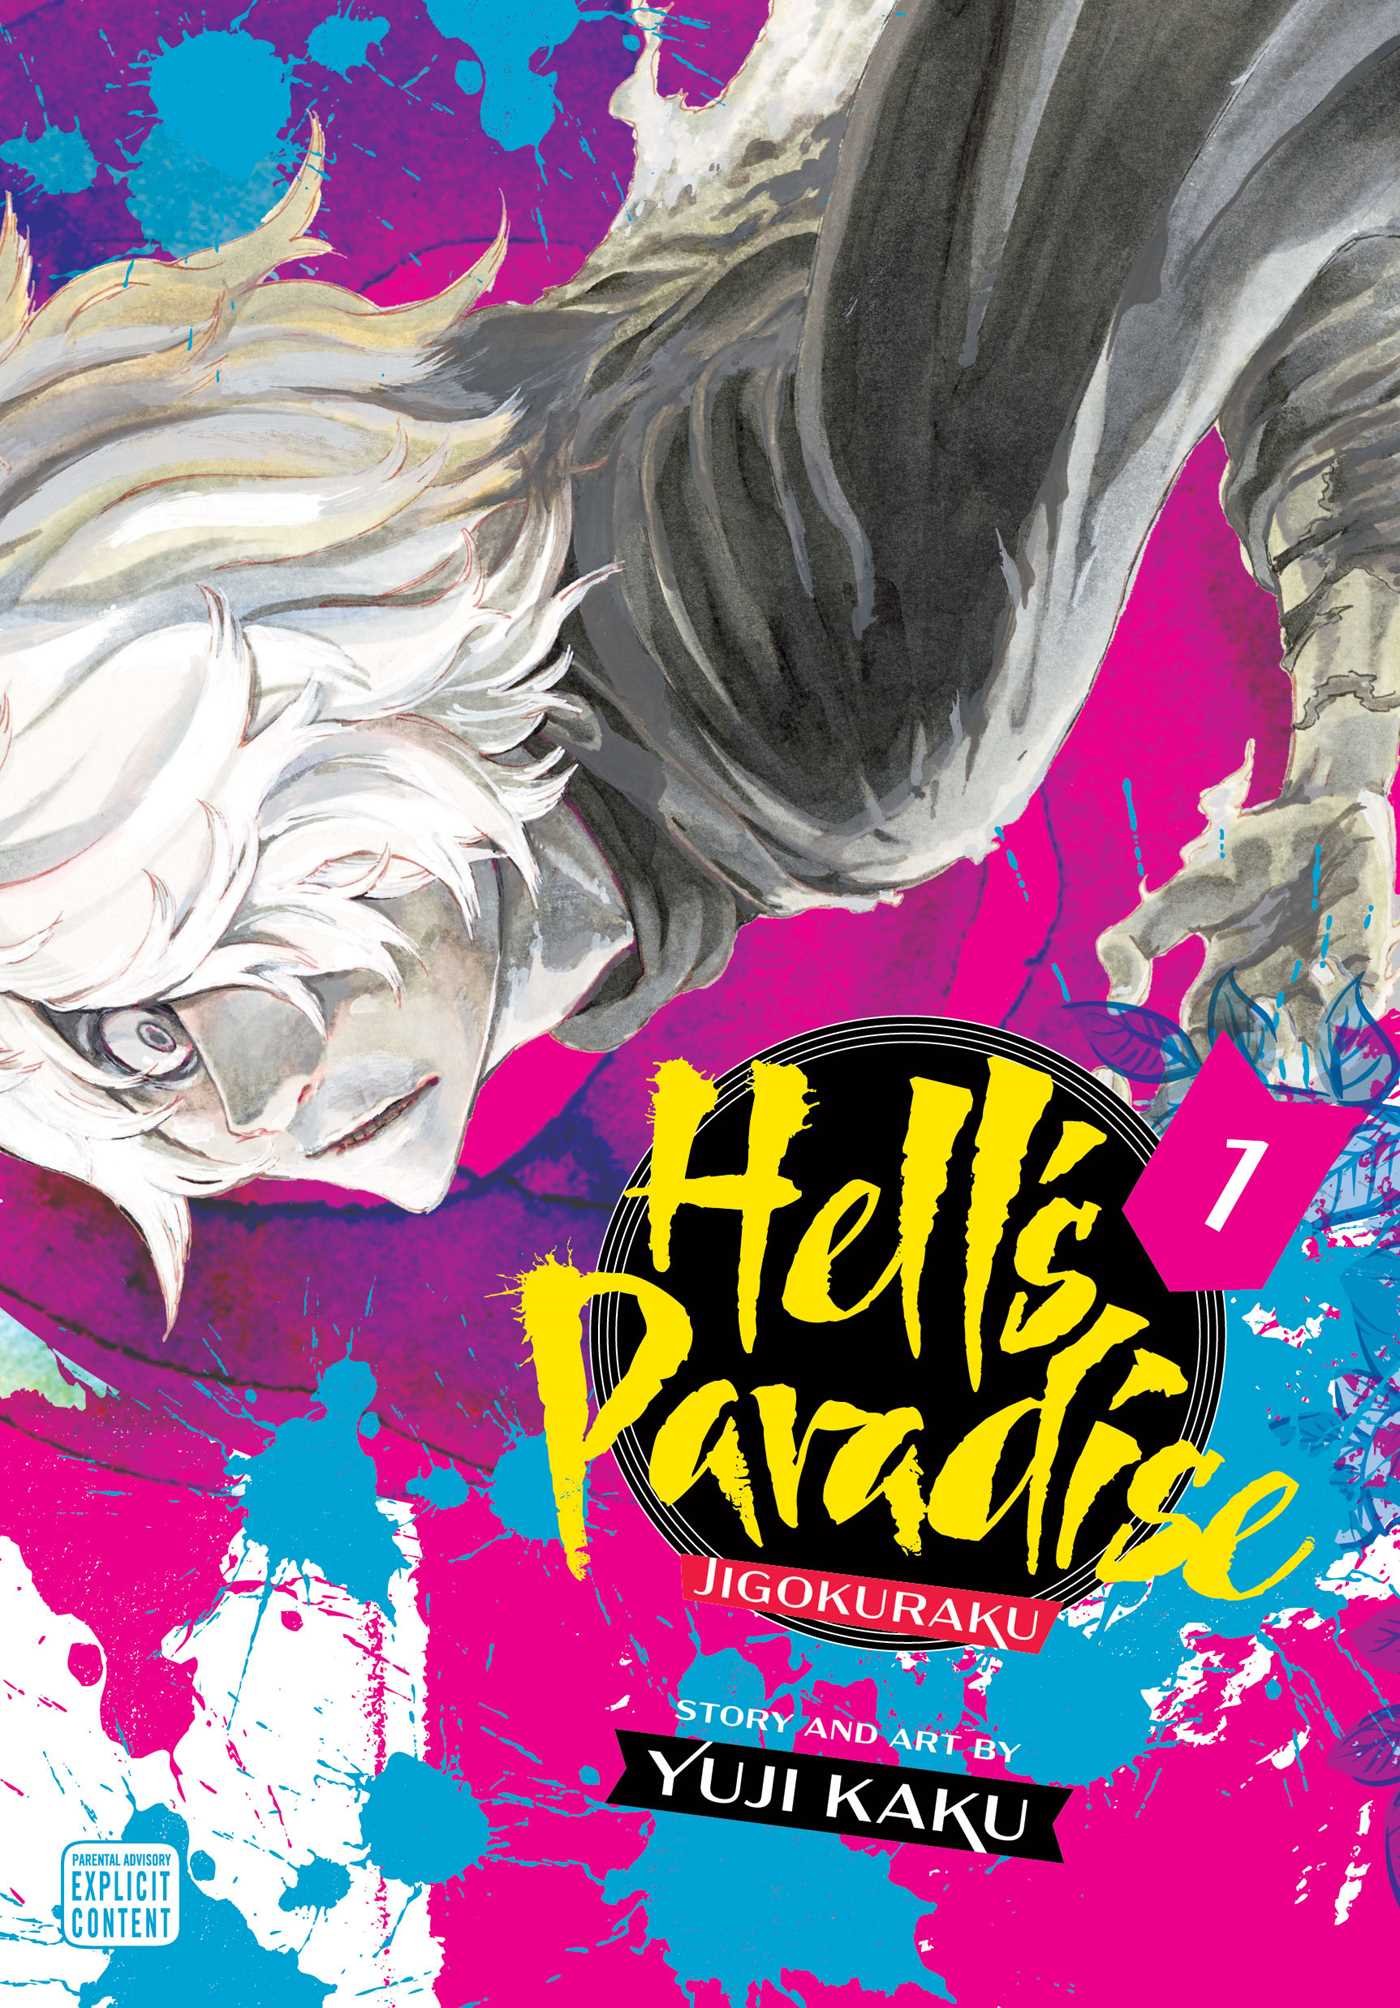 Hell's Paradise: Jigokuraku Anime Announces Opening Theme Preivew And April  1 Premiere - Anime Explained